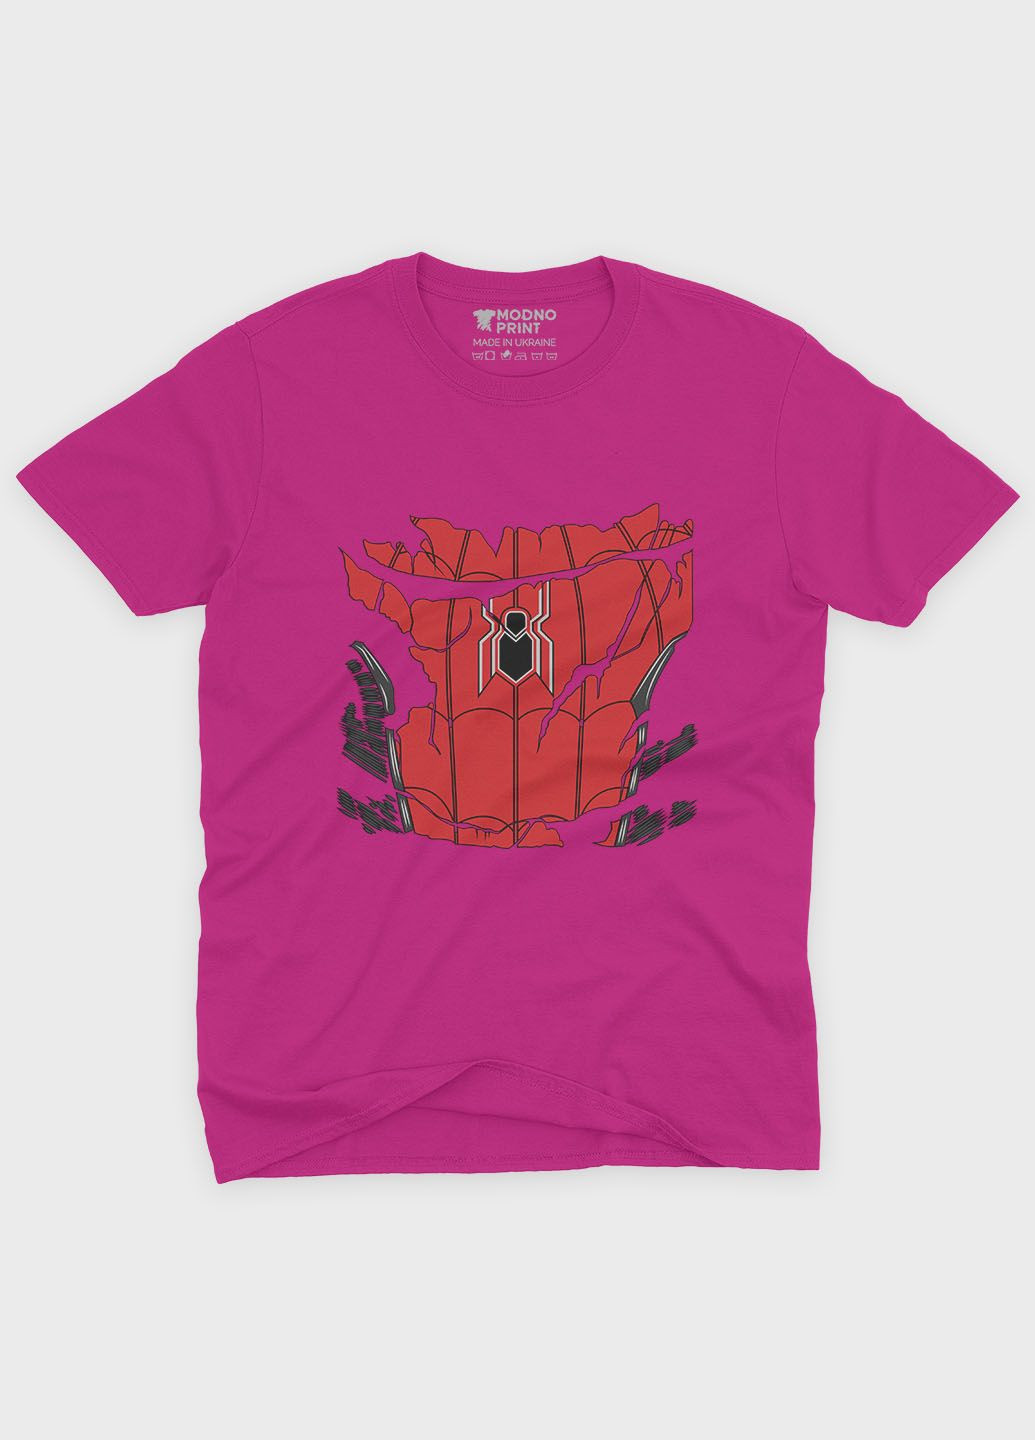 Розовая демисезонная футболка для девочки с принтом супергероя - человек-паук (ts001-1-fuxj-006-014-090-g) Modno